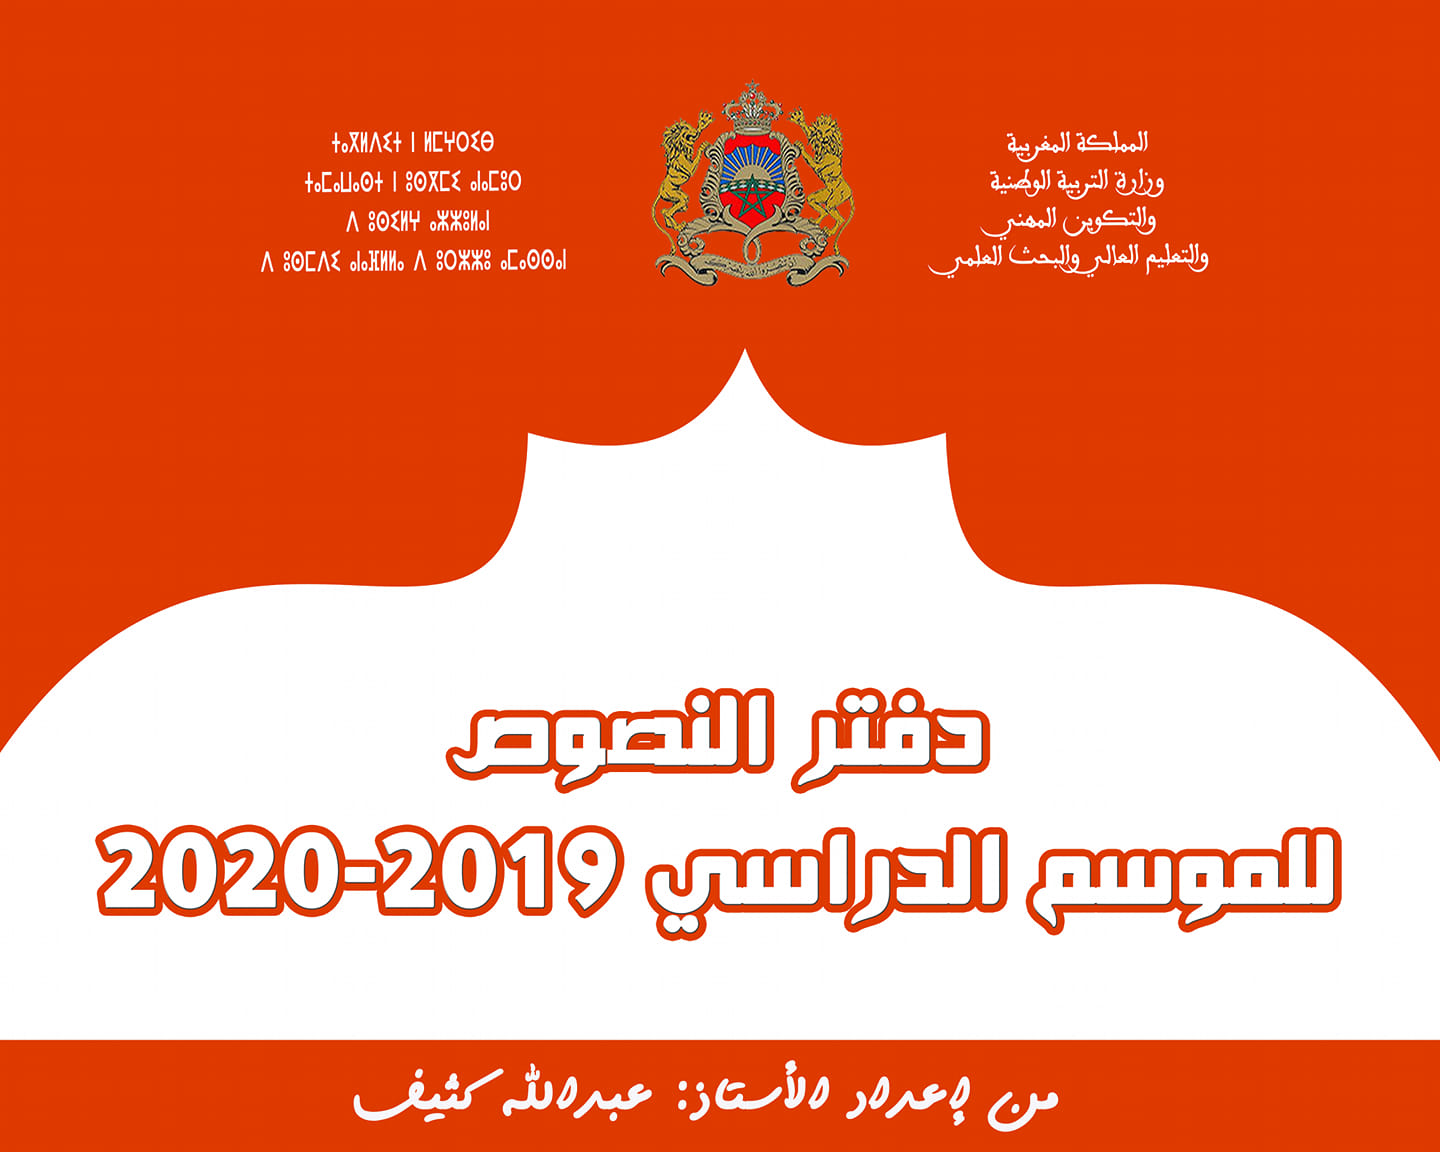 دفتر النصوص بصيغة word للموسم الدراسي 2020-2019